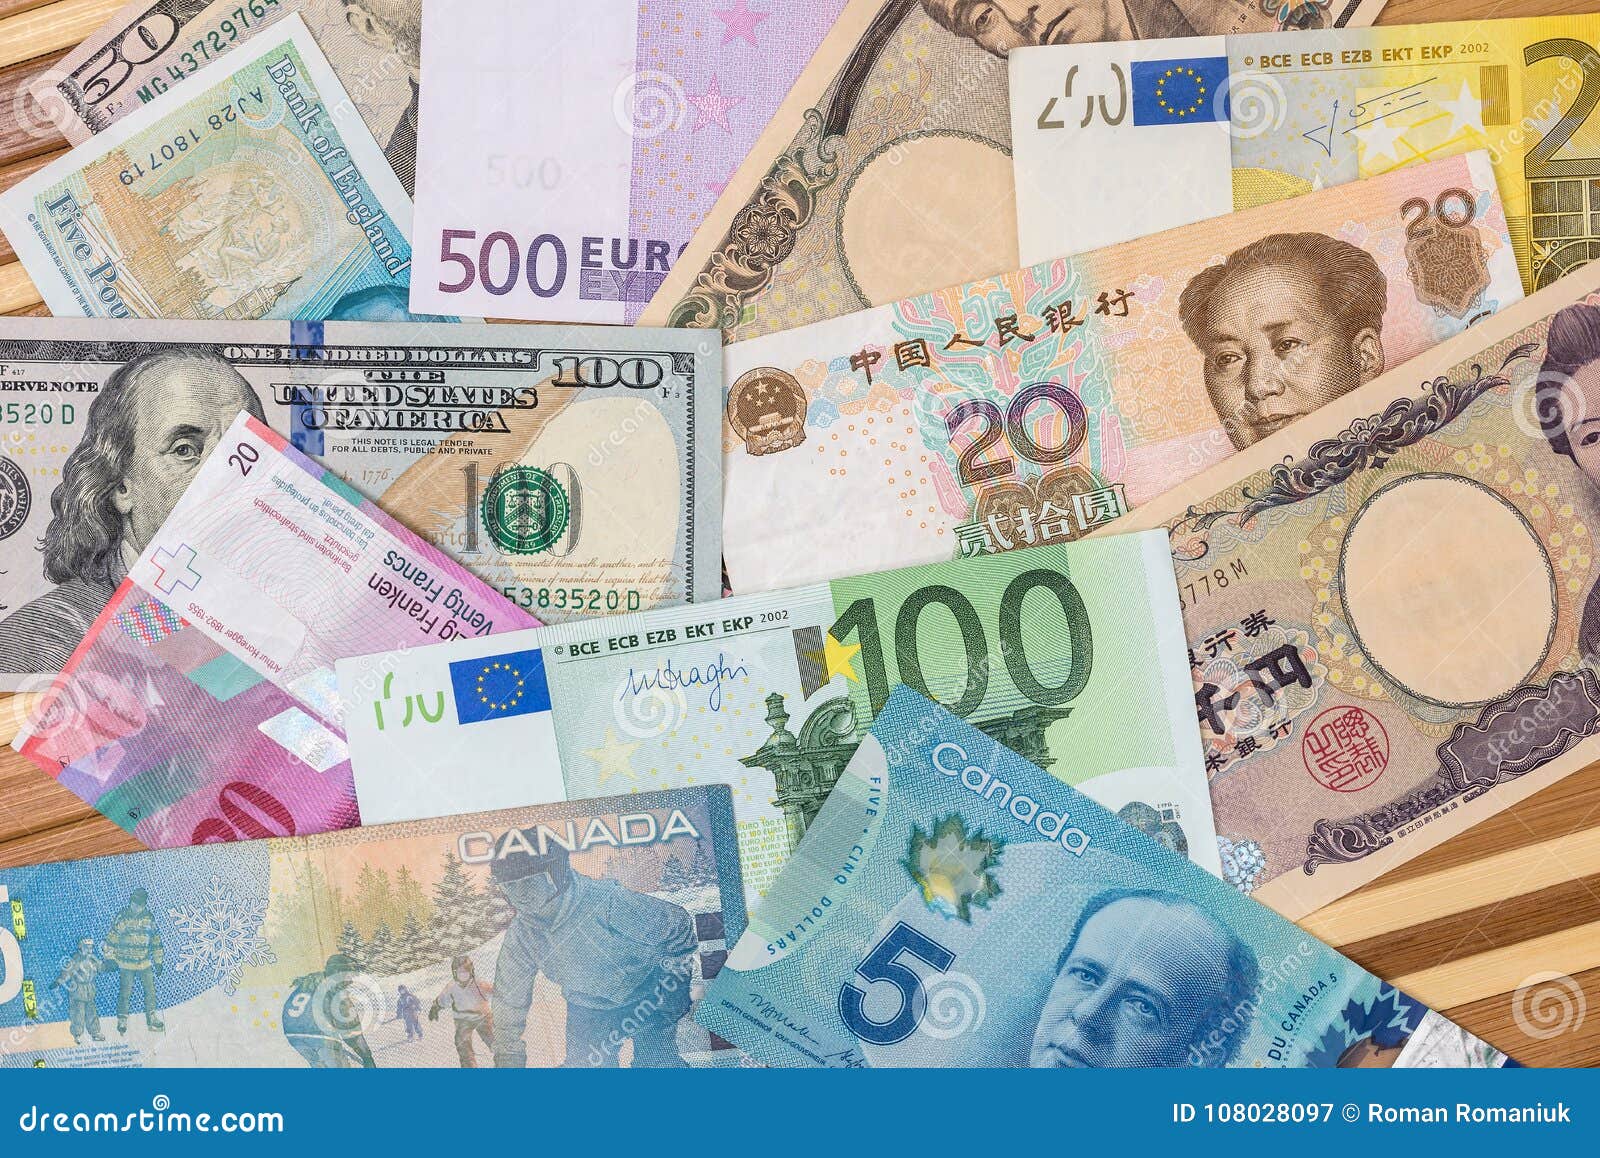 Евро доллар фунт. Доллар евро юань. Доллар евро Франк. Доллары, иены, фунты стерлинги, евро.. Доллар евро фунт.